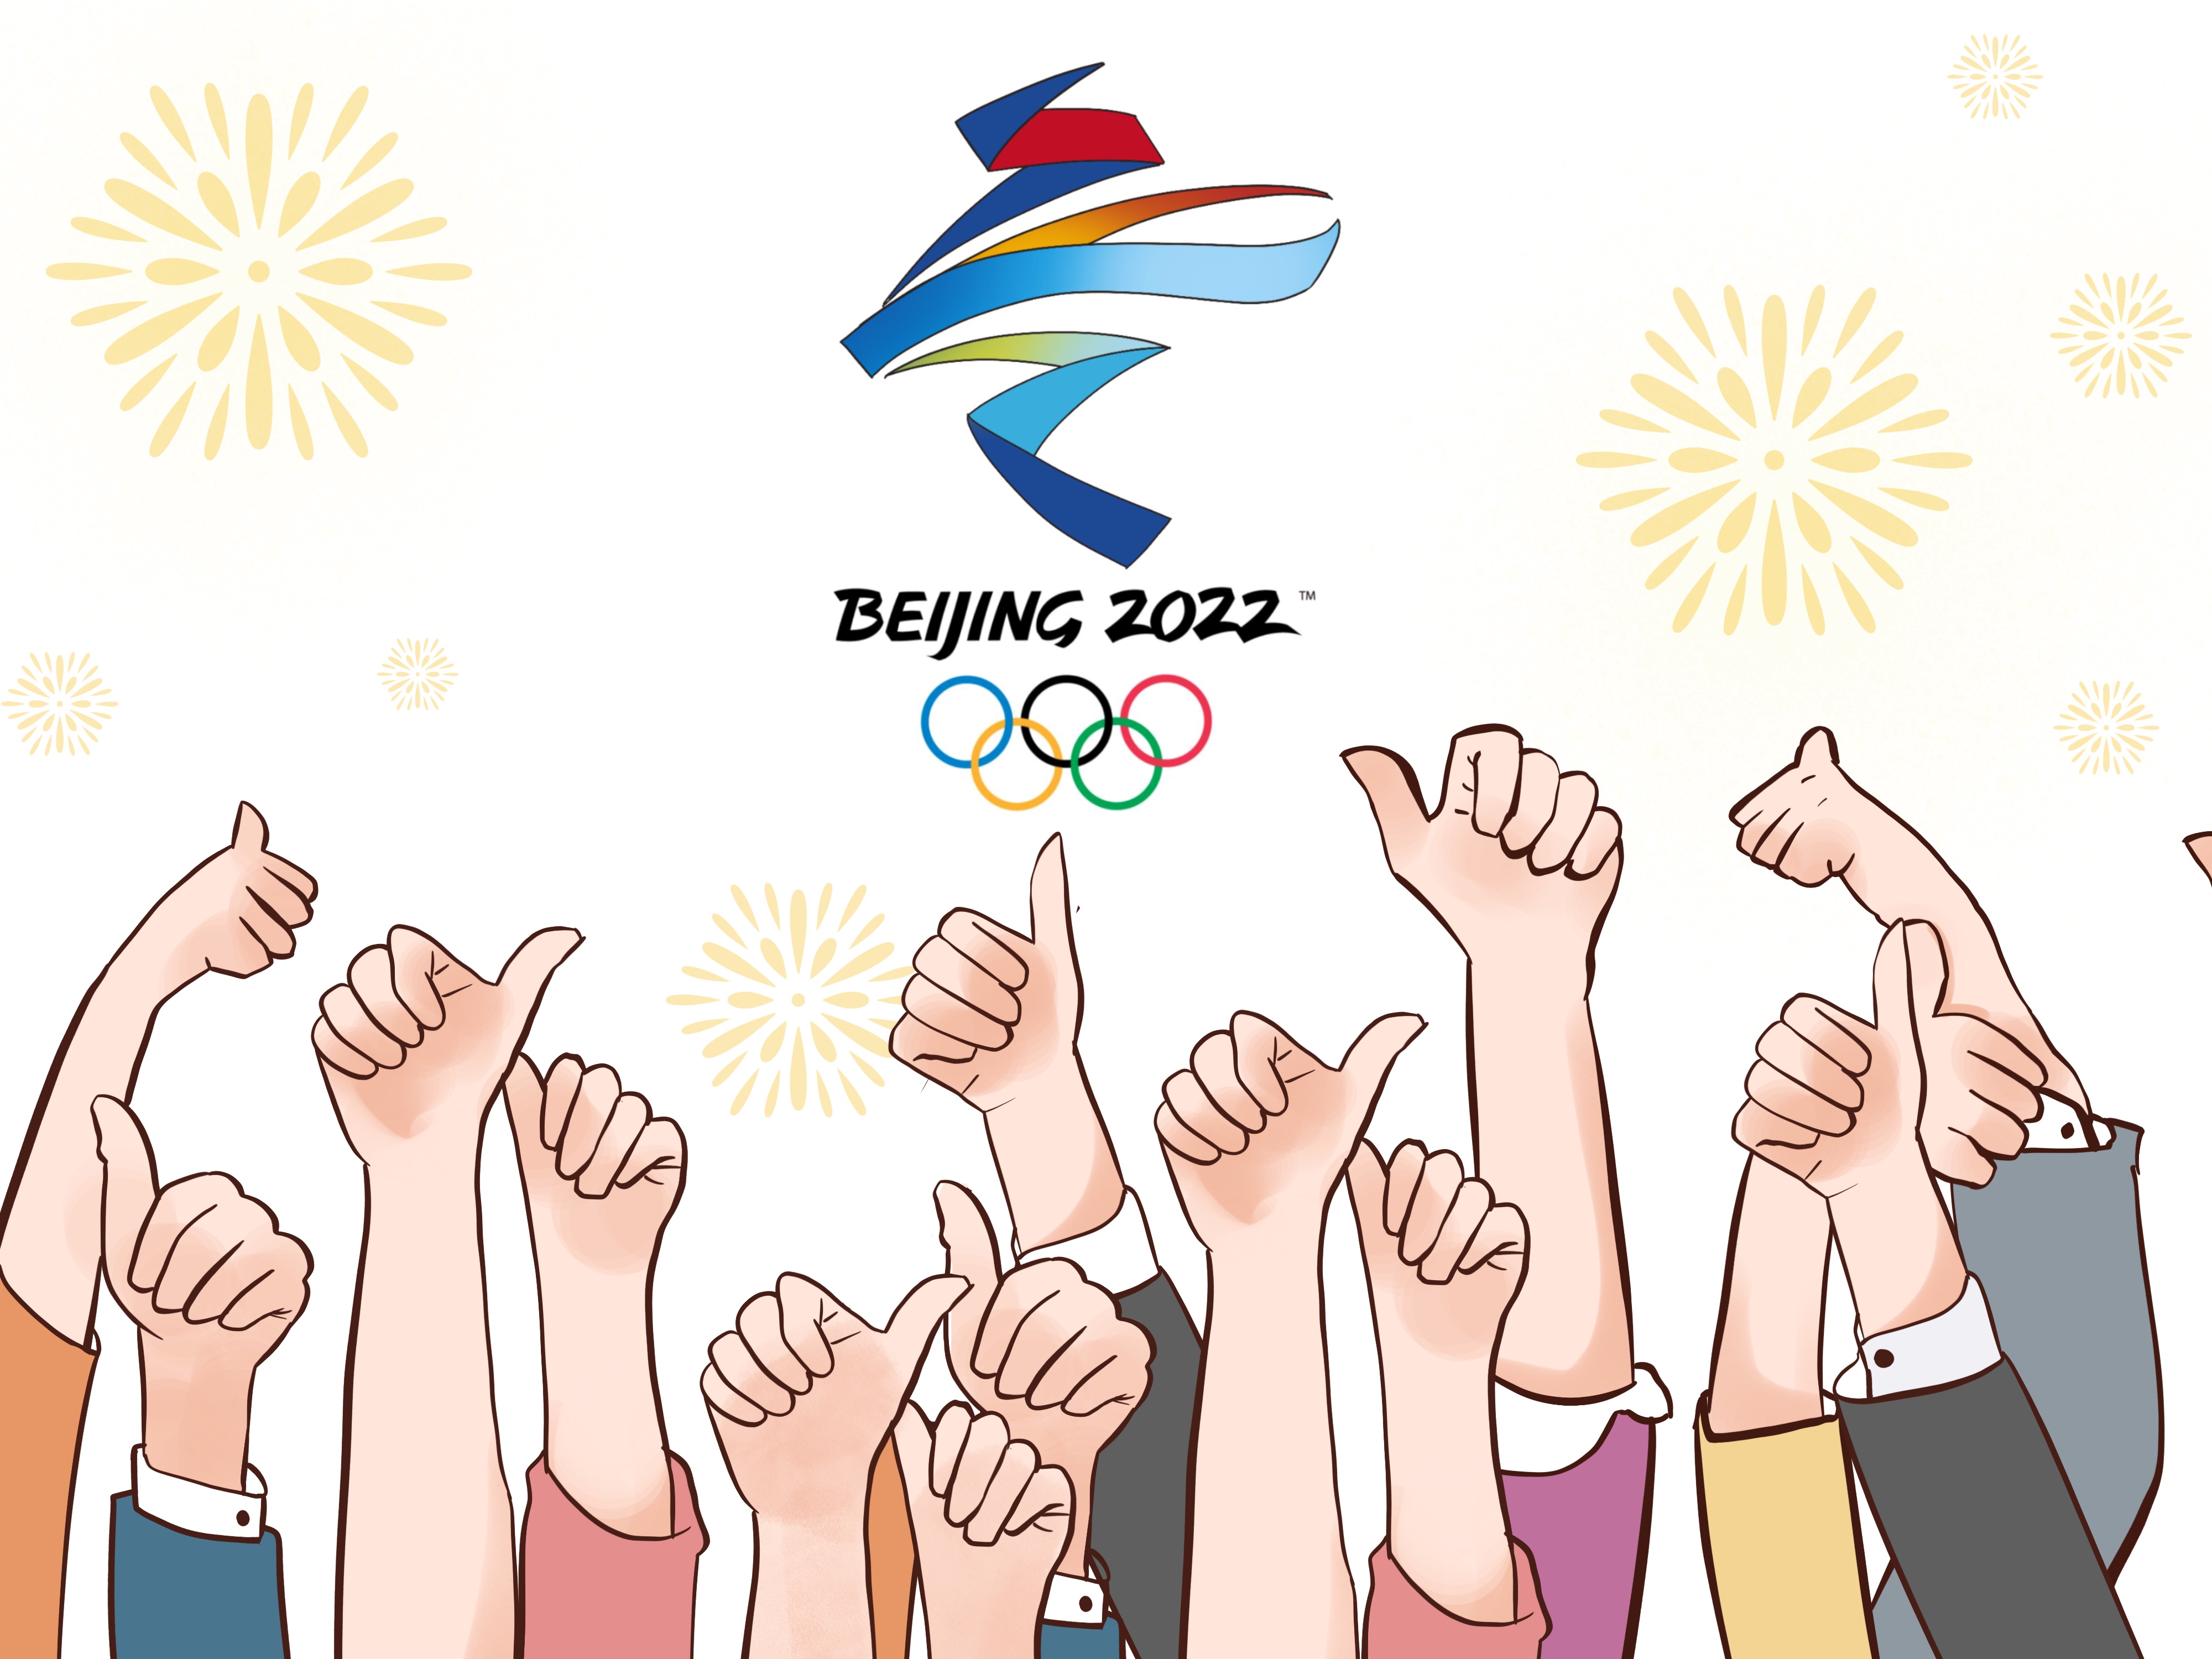 巴西体育界反对体育政治化祝福北京冬奥圆满成功